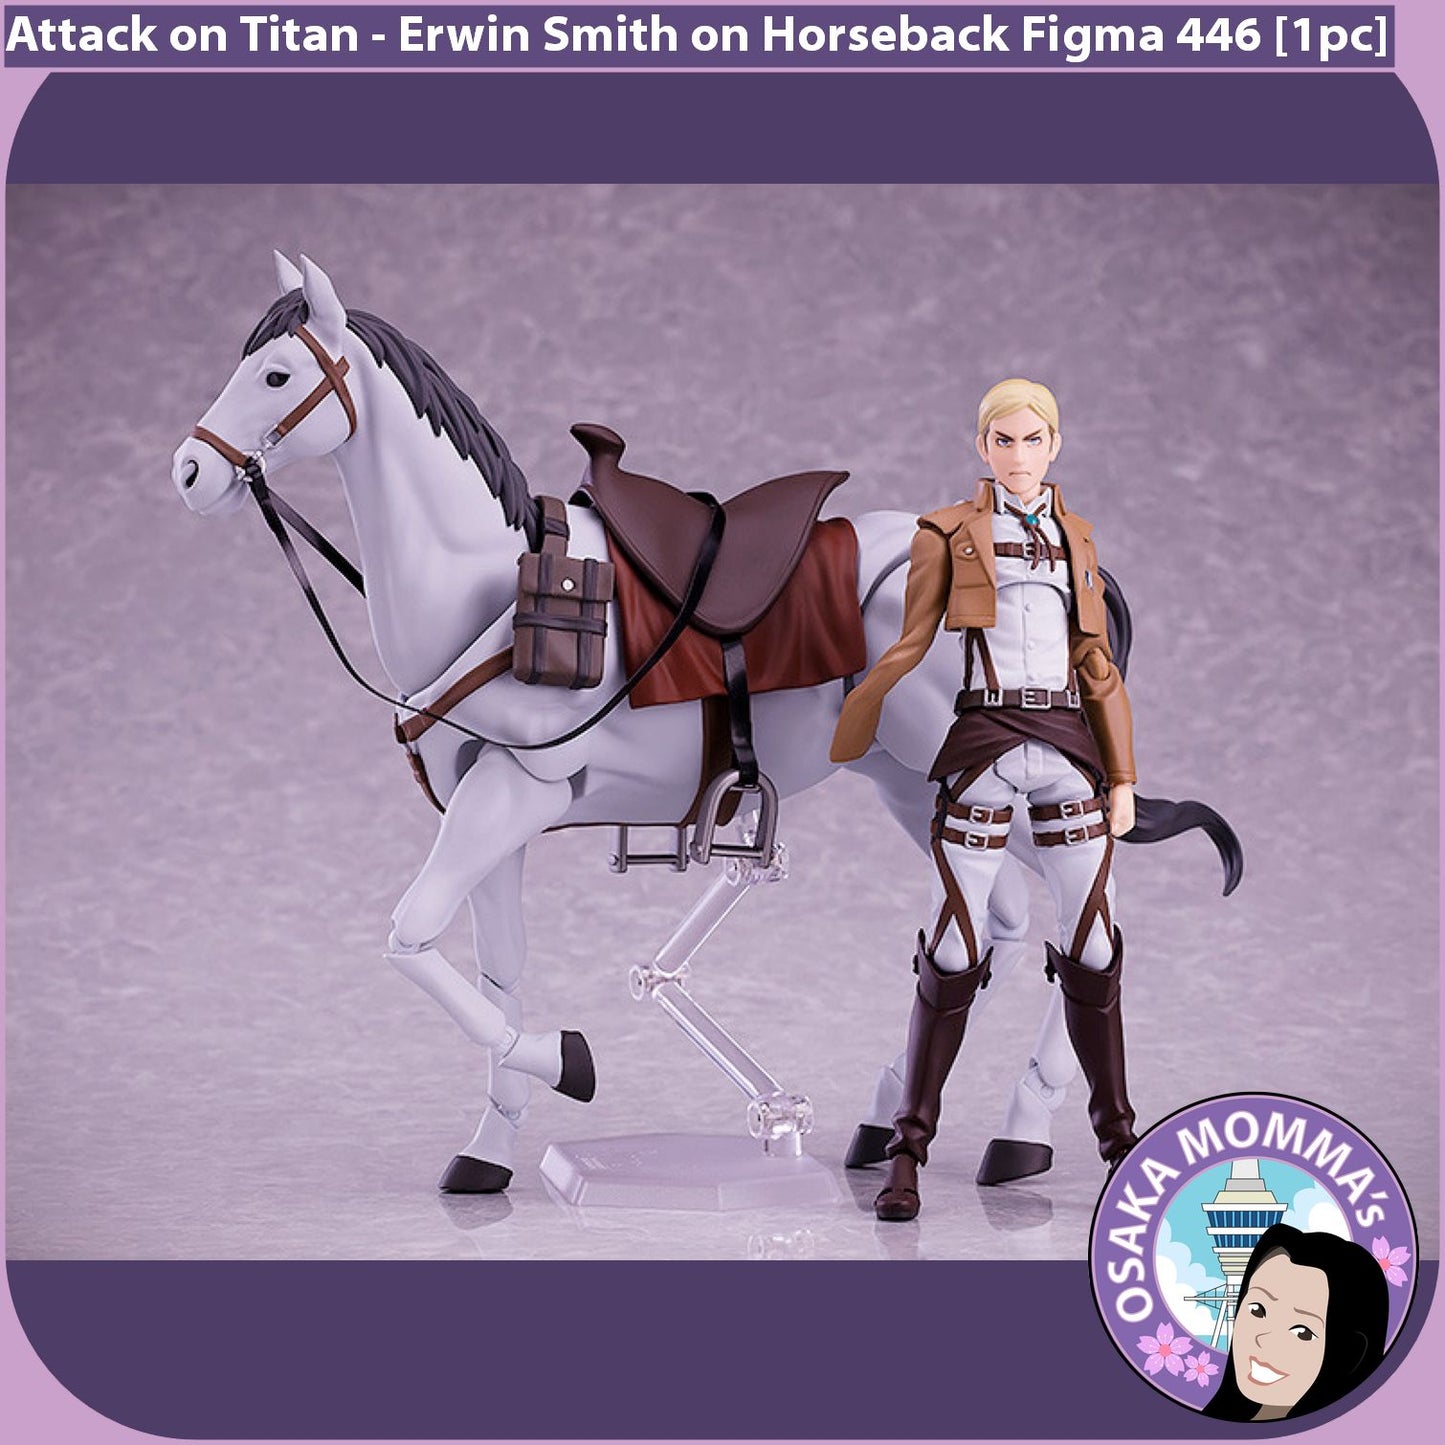 Erwin Smith on Horseback Figma 446